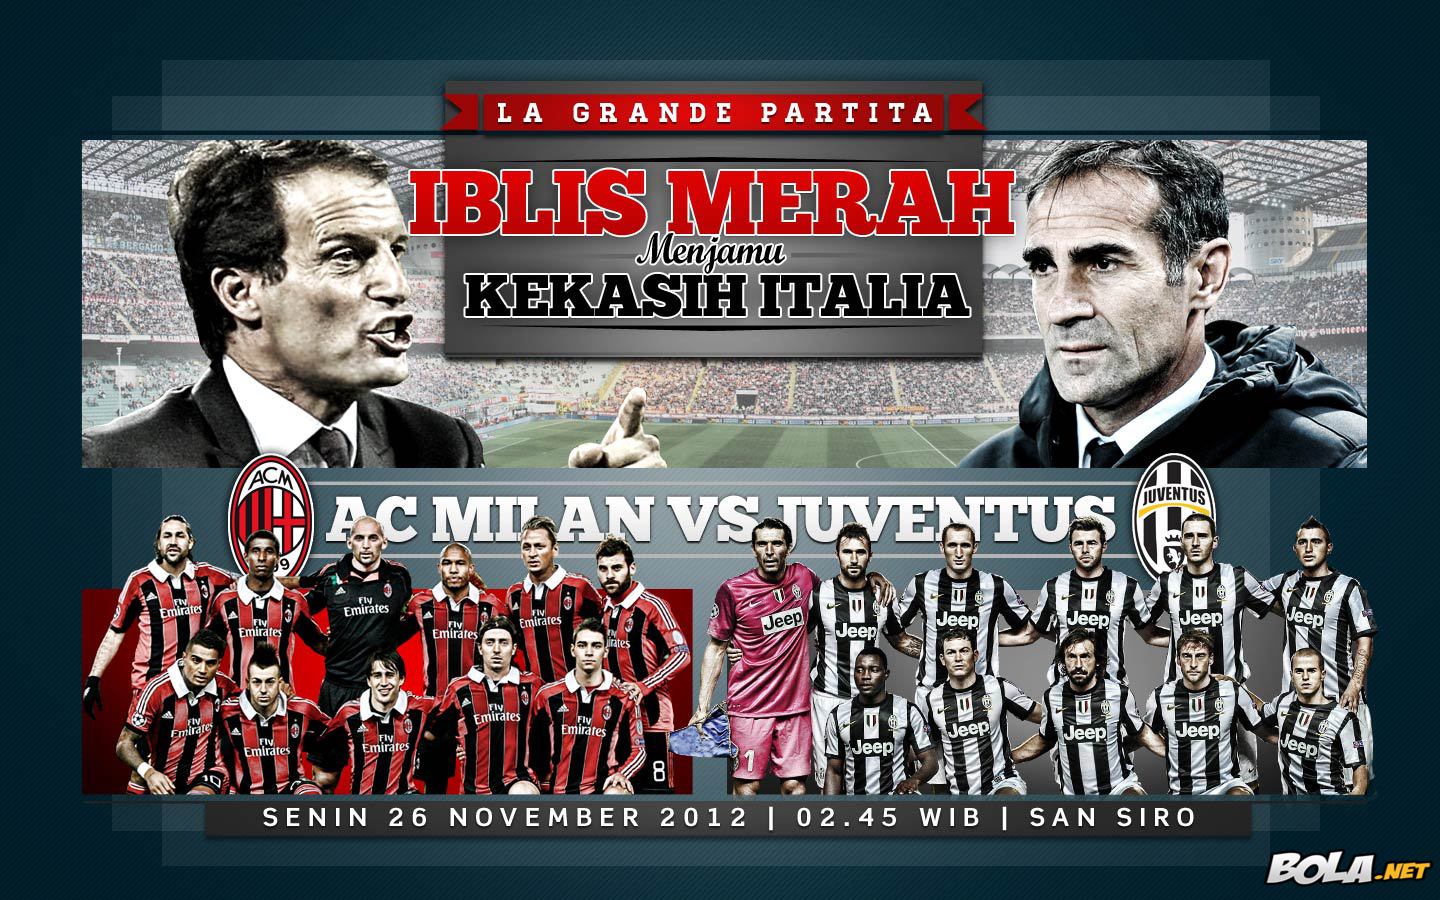 Deskripsi : Wallpaper Ac Milan Vs Juventus, size: 1440x900